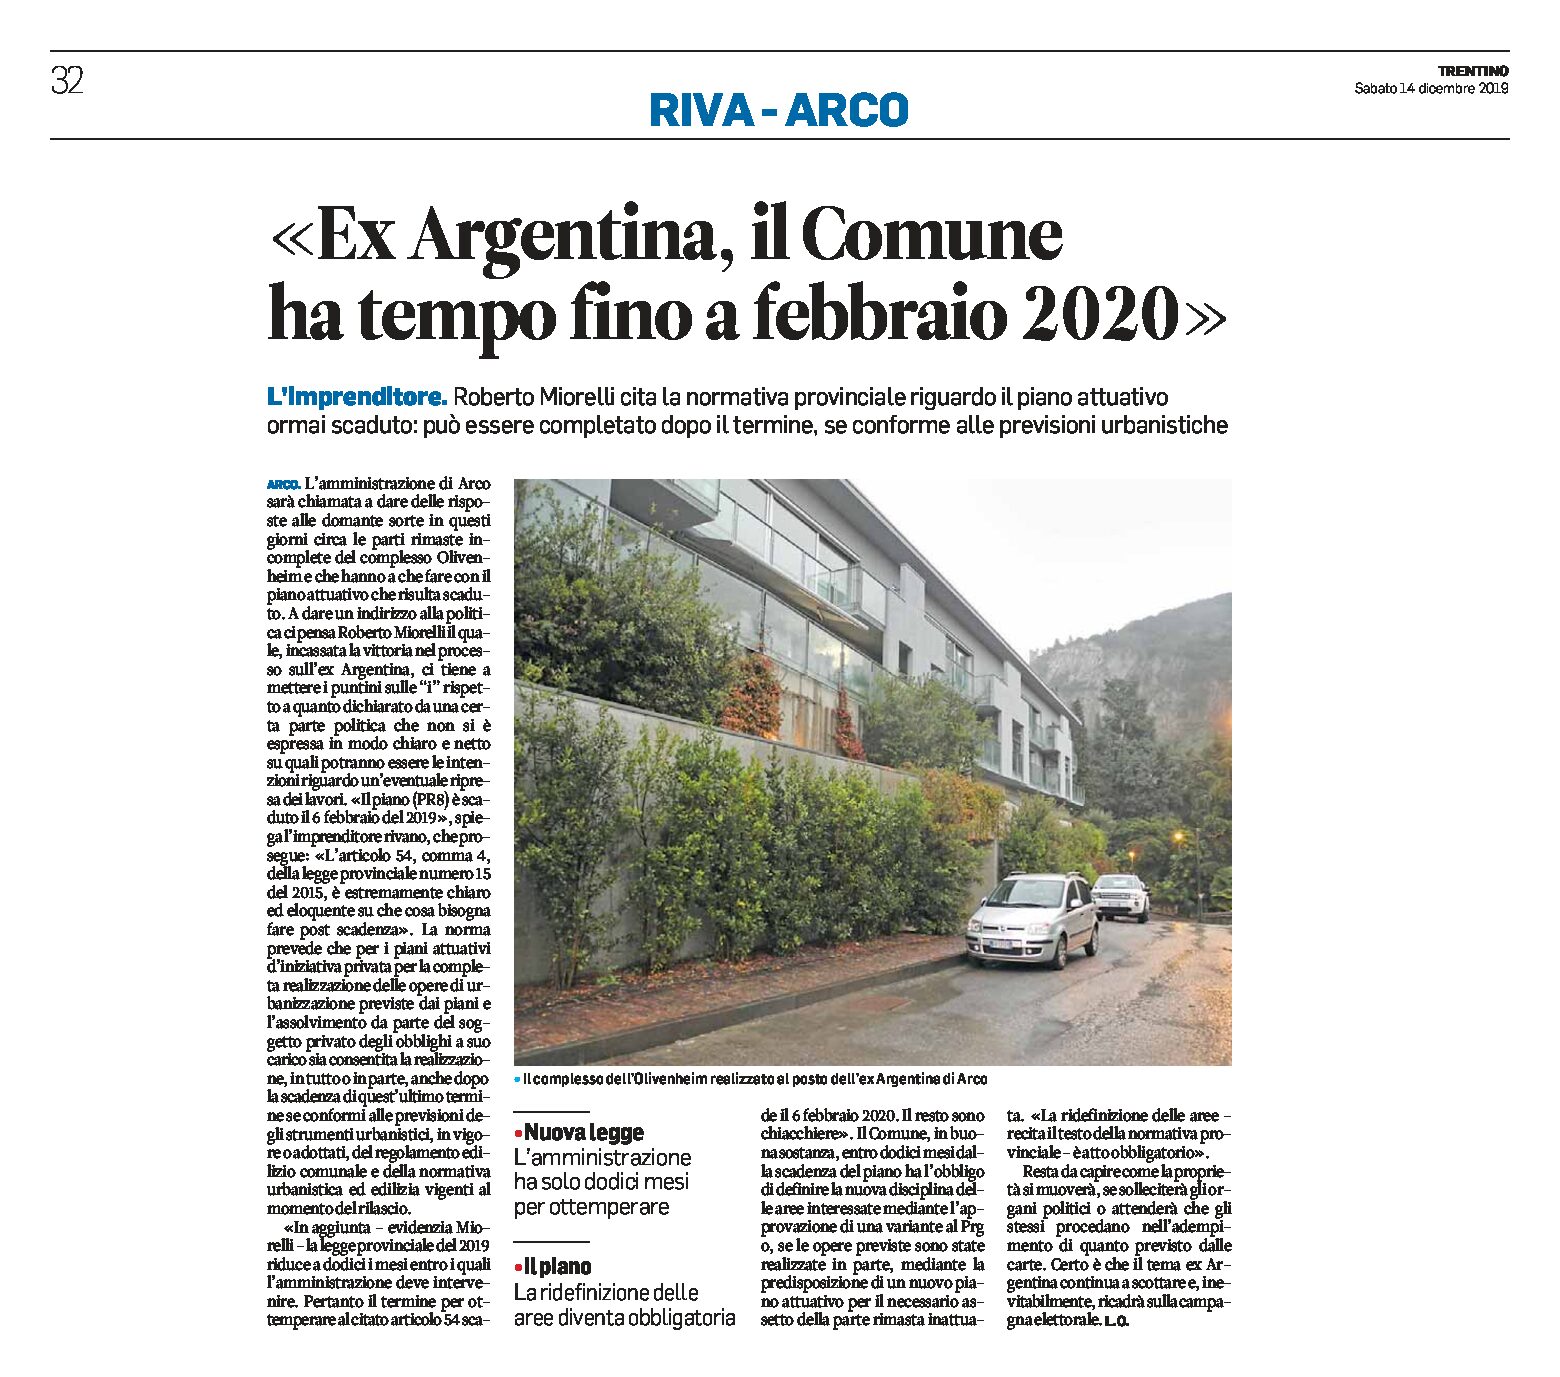 Arco, ex Argentina: il Comune ha tempo fino a febbraio 2020